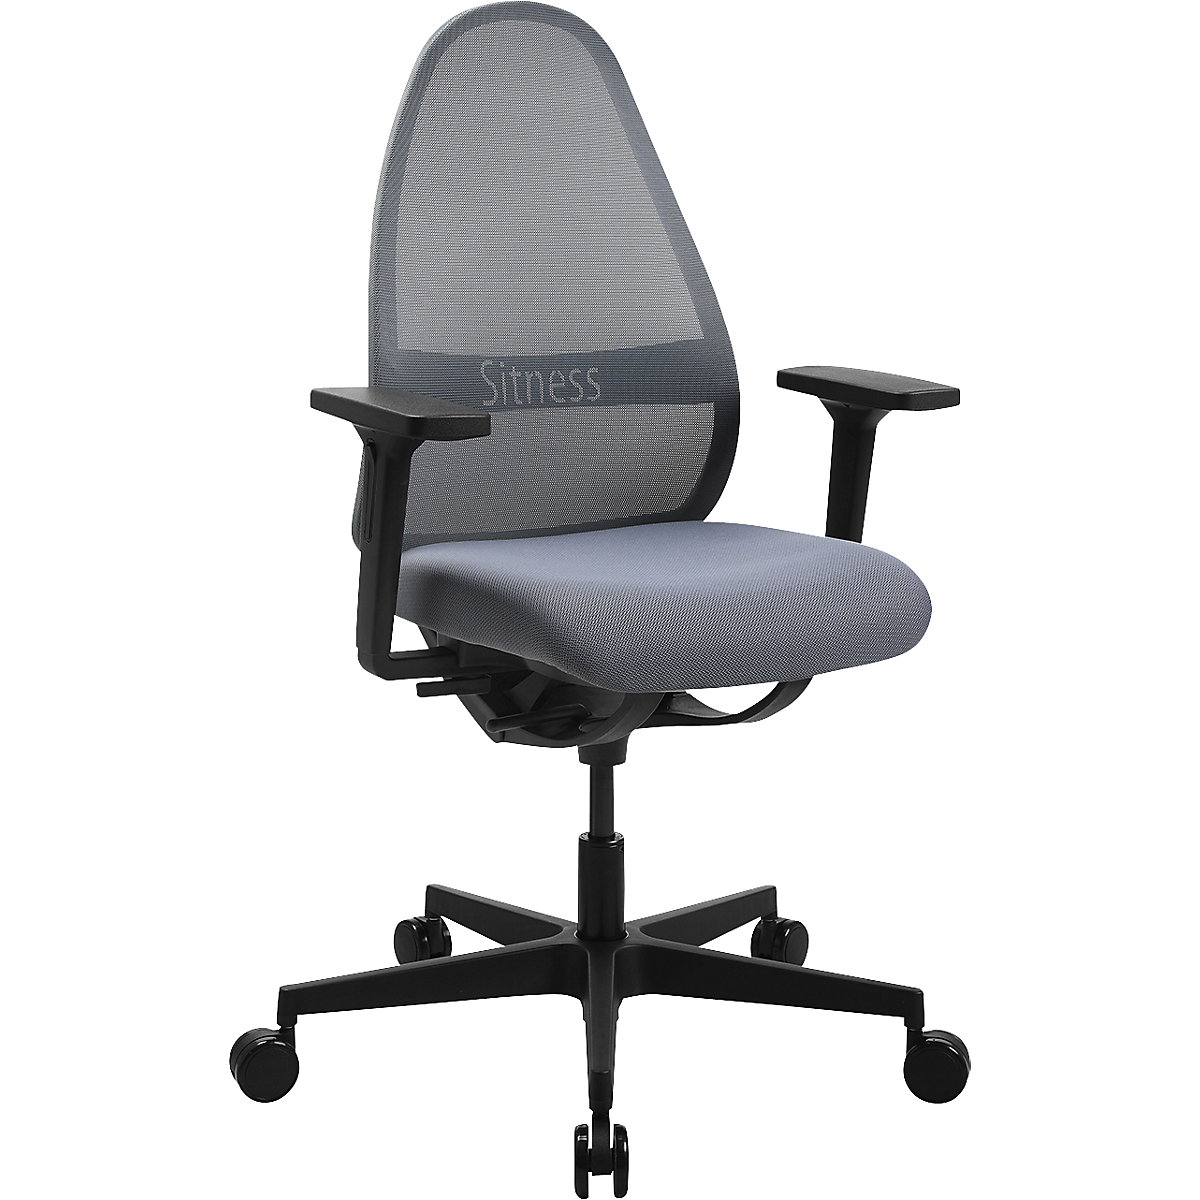 SOFT SITNESS ART office swivel chair – Topstar